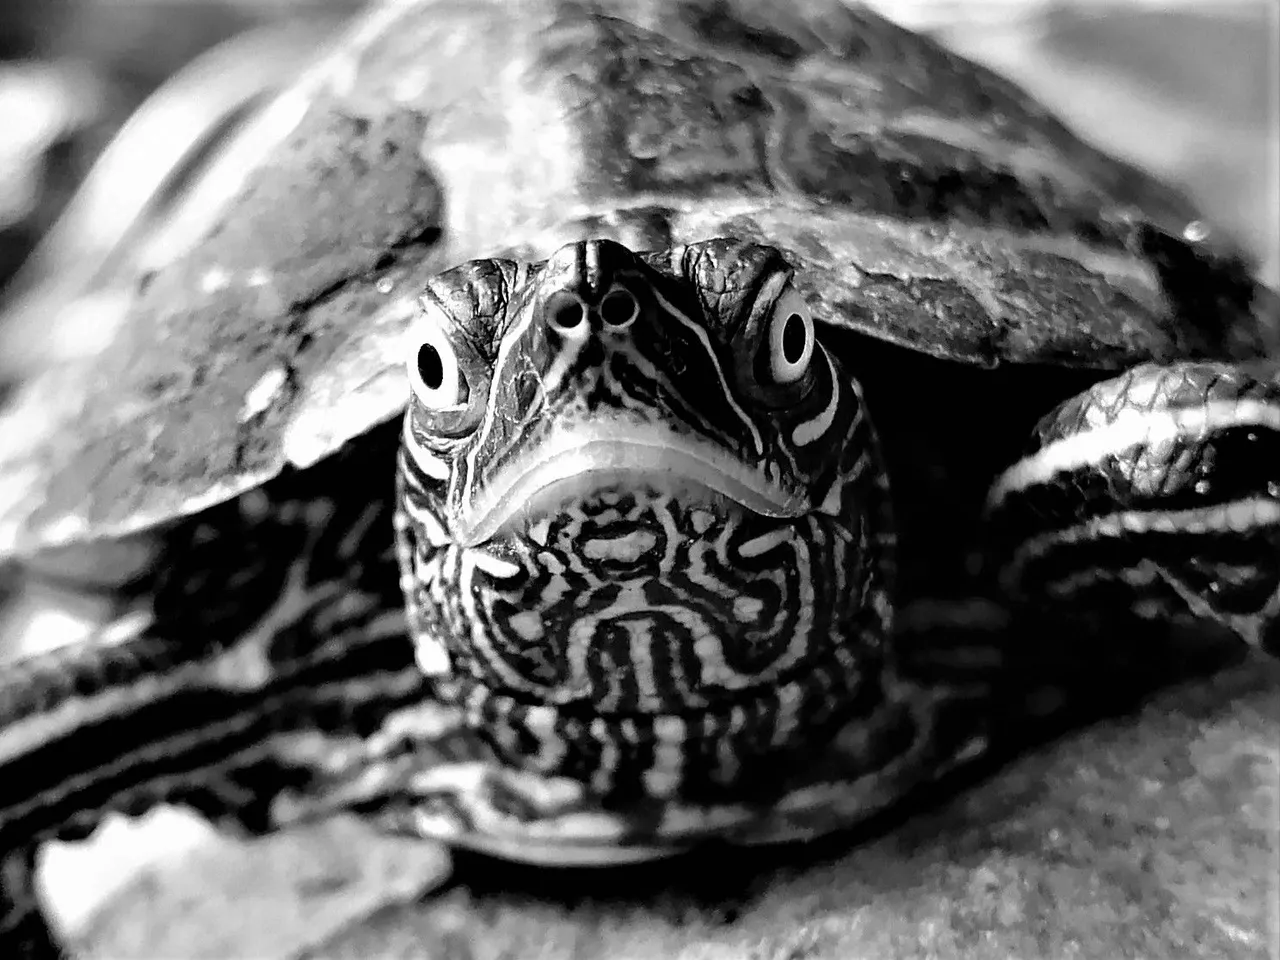 turtle02.jpg